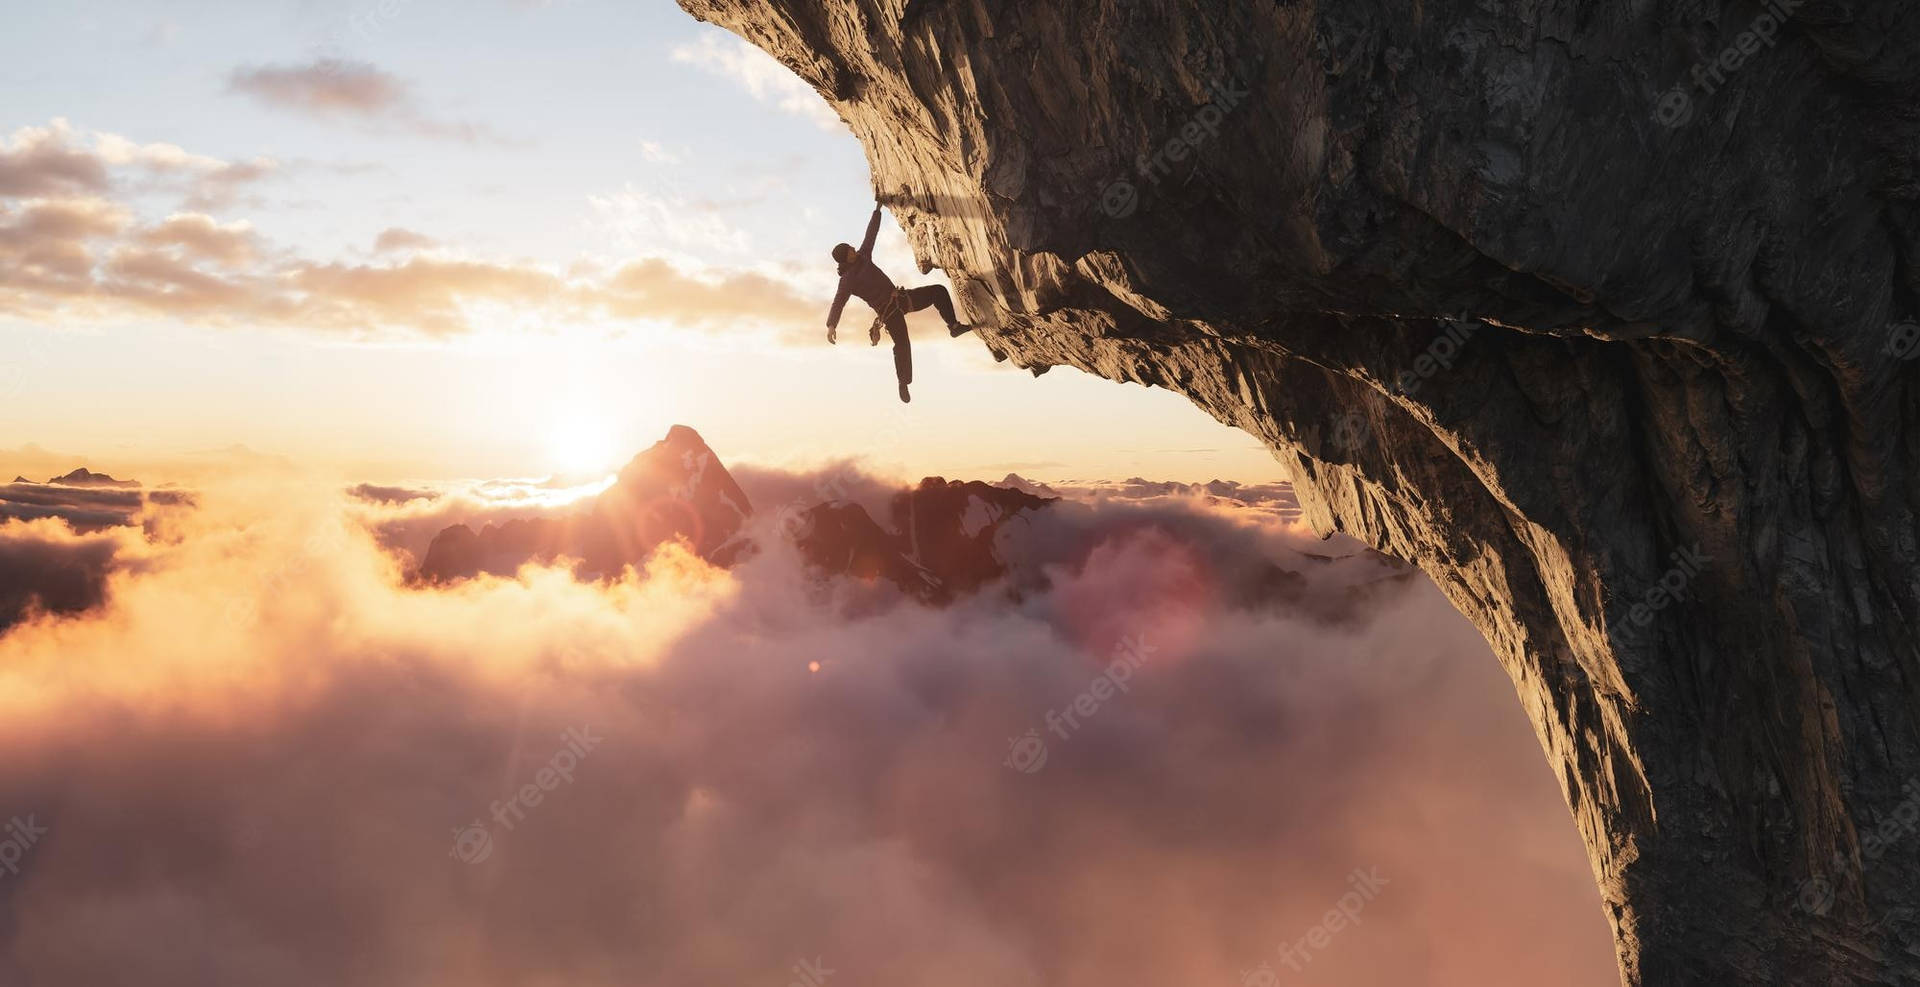 Man Rock Climbing Over A Foggy Mountain View Wallpaper